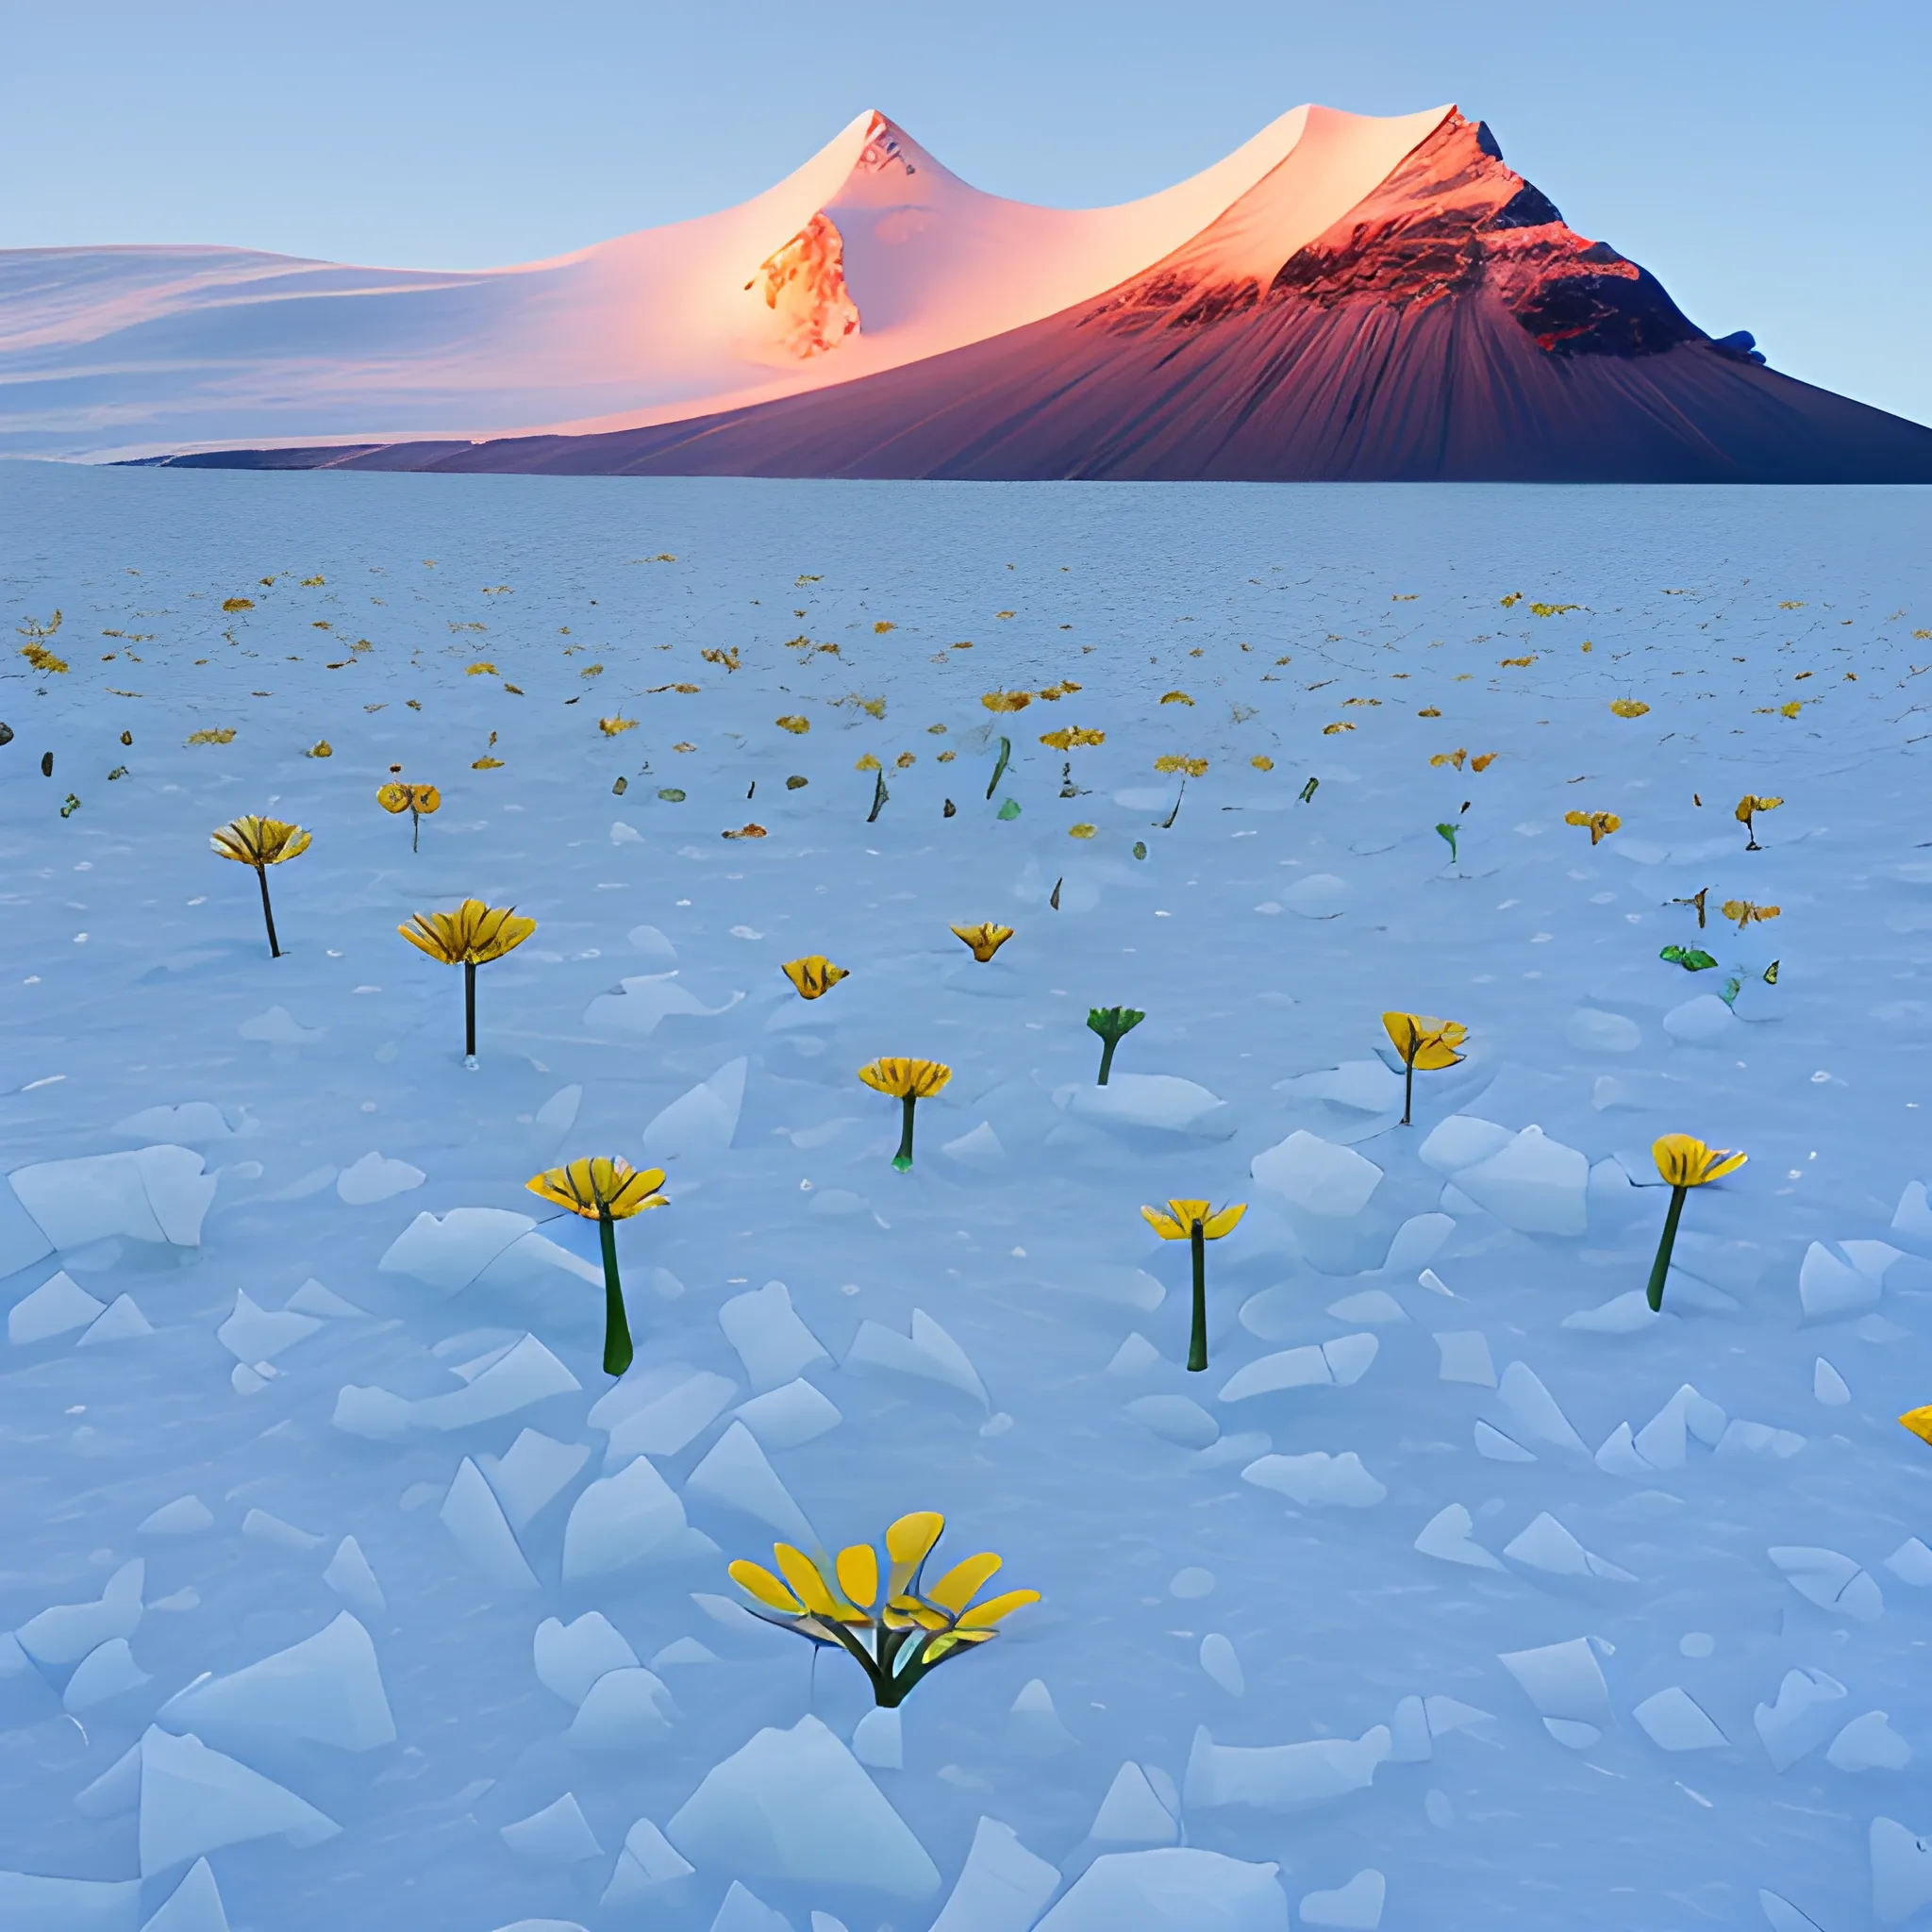 flowers on Antarctic

